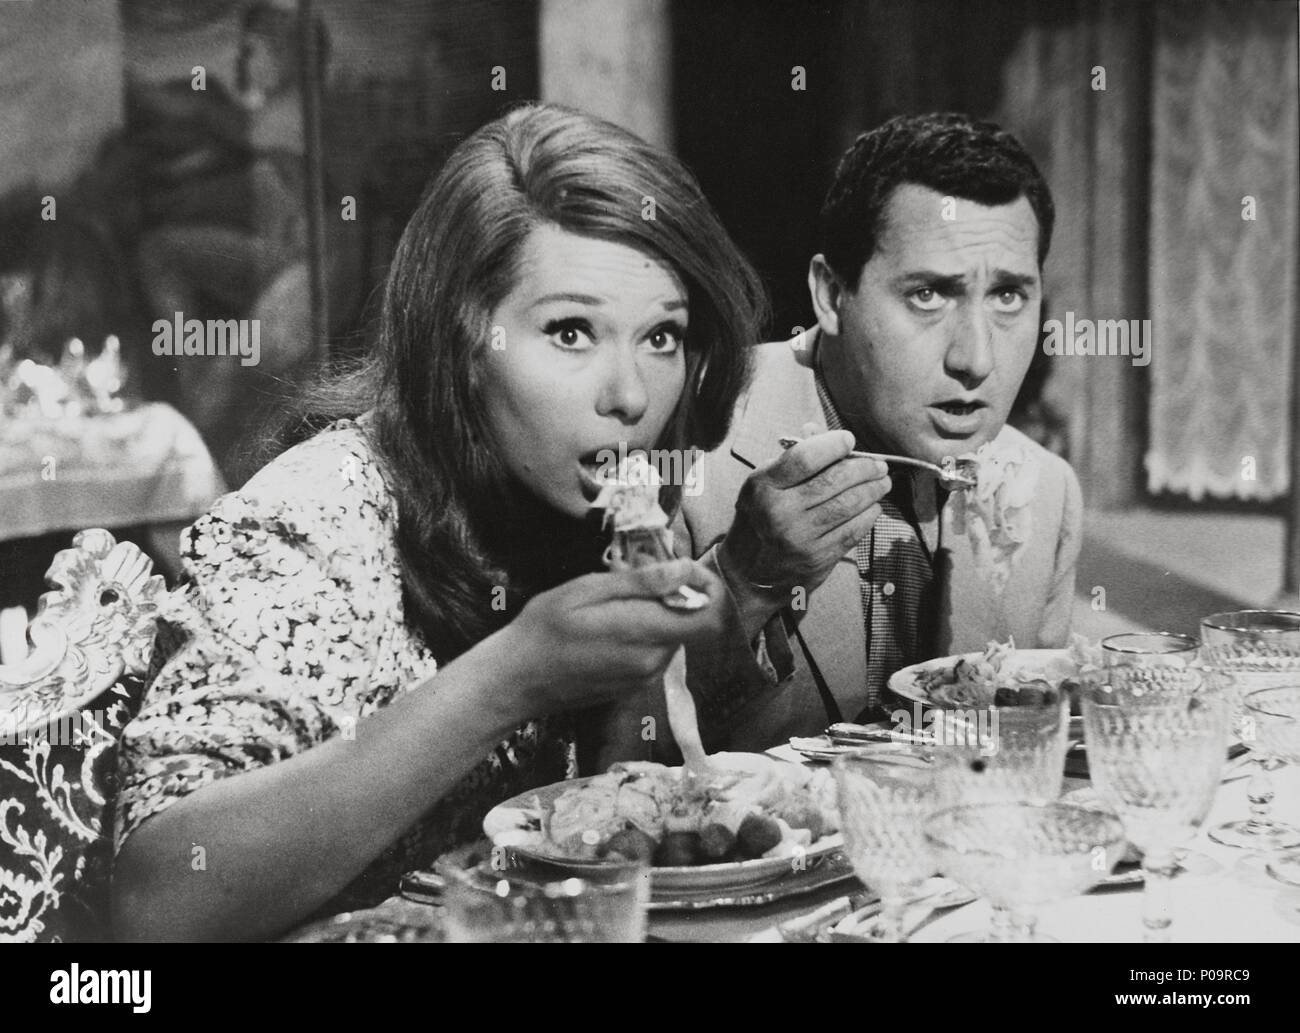 Original Film Title: UNA VITA DIFFICILE.  English Title: A DIFFICULT LIFE.  Film Director: DINO RISI.  Year: 1961. Stock Photo